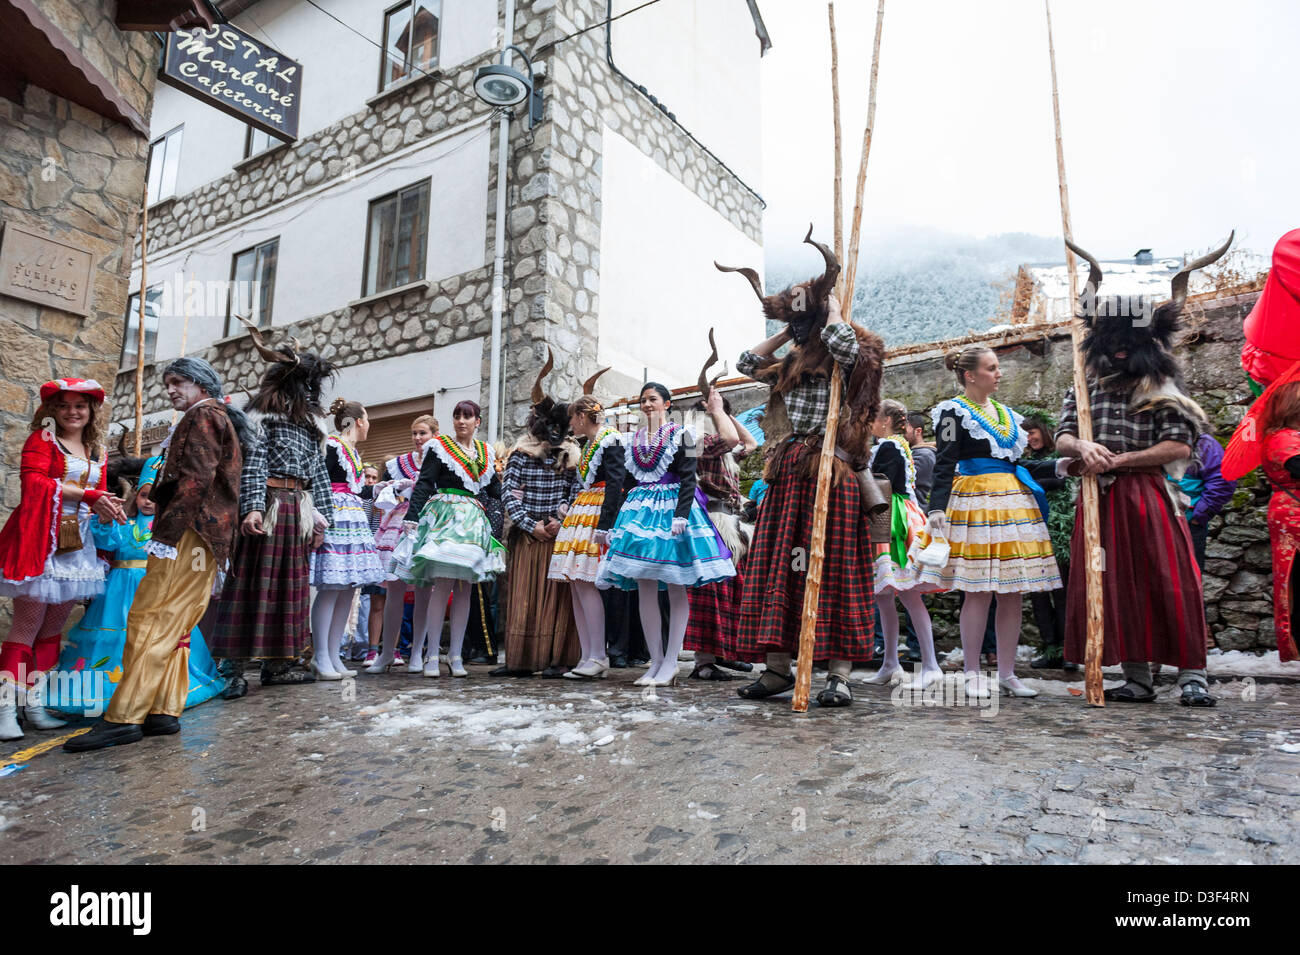 Carnaval de Bielsa, l'un des plus traditionnelles de carnaval dans les Pyrénées, Aragon, Espagne. Banque D'Images